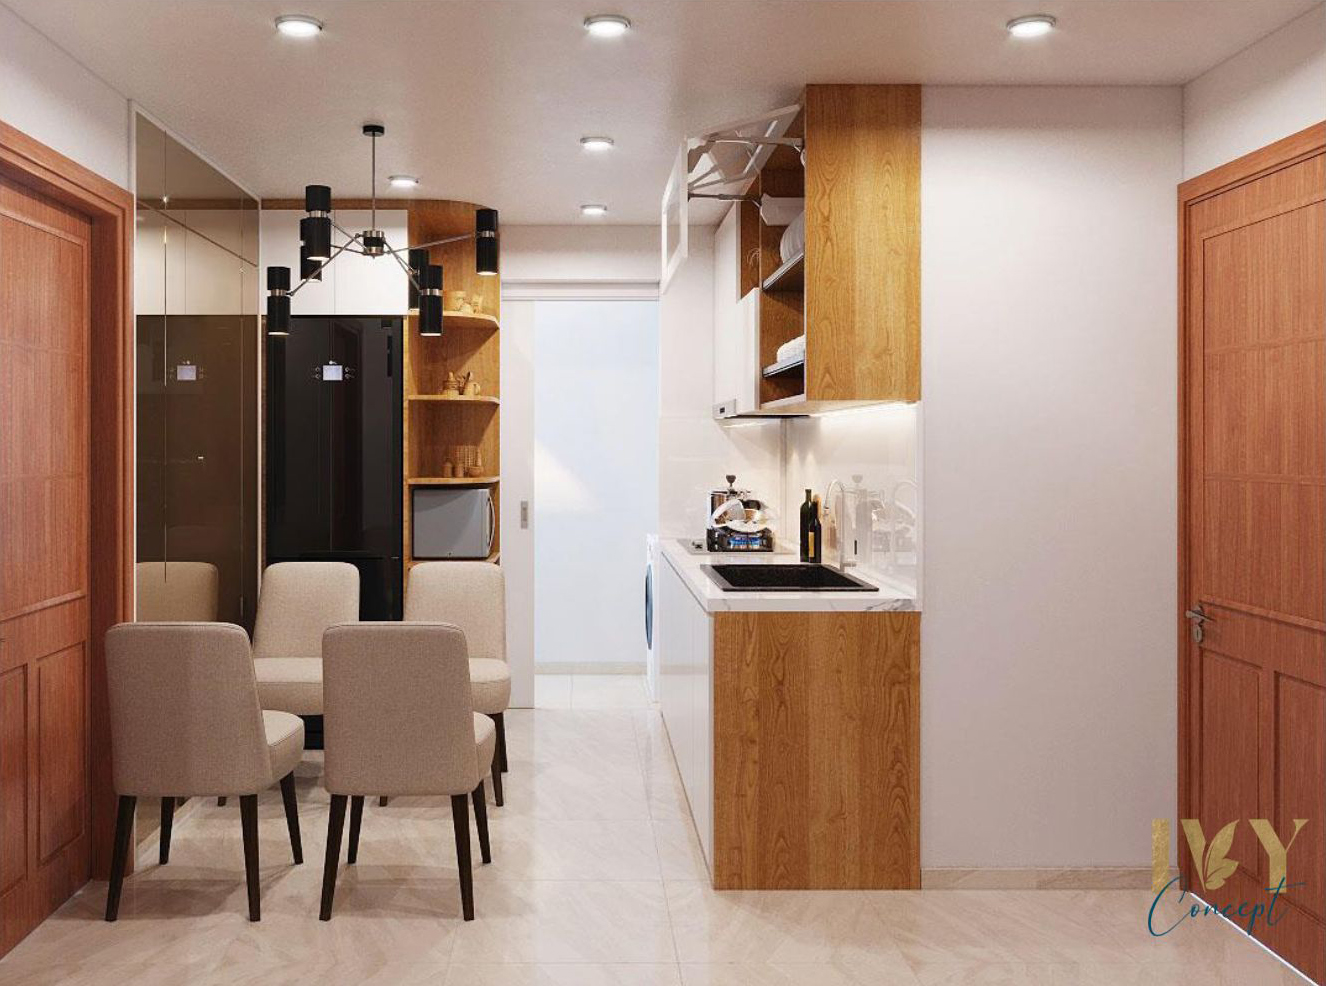 Phòng bếp, phòng ăn, phong cách Bắc Âu Scandinavian, thiết kế concept nội thất, căn hộ The CBD Premium Home